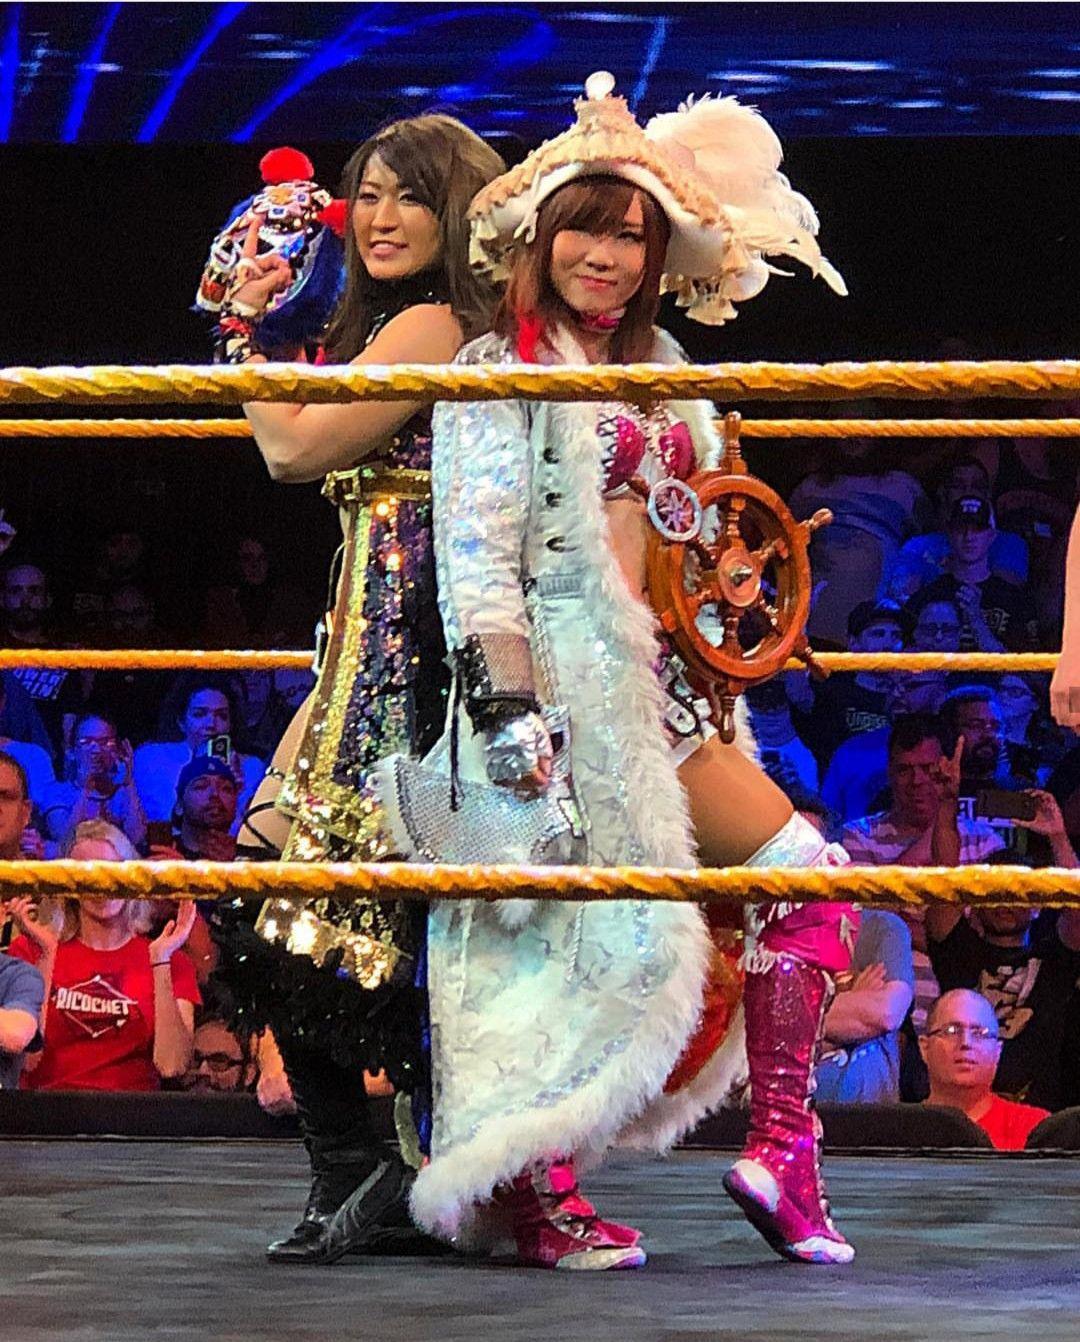 Io Shirai & Kairi Sane. Io Shirai. Wrestling wwe, Wwe tna